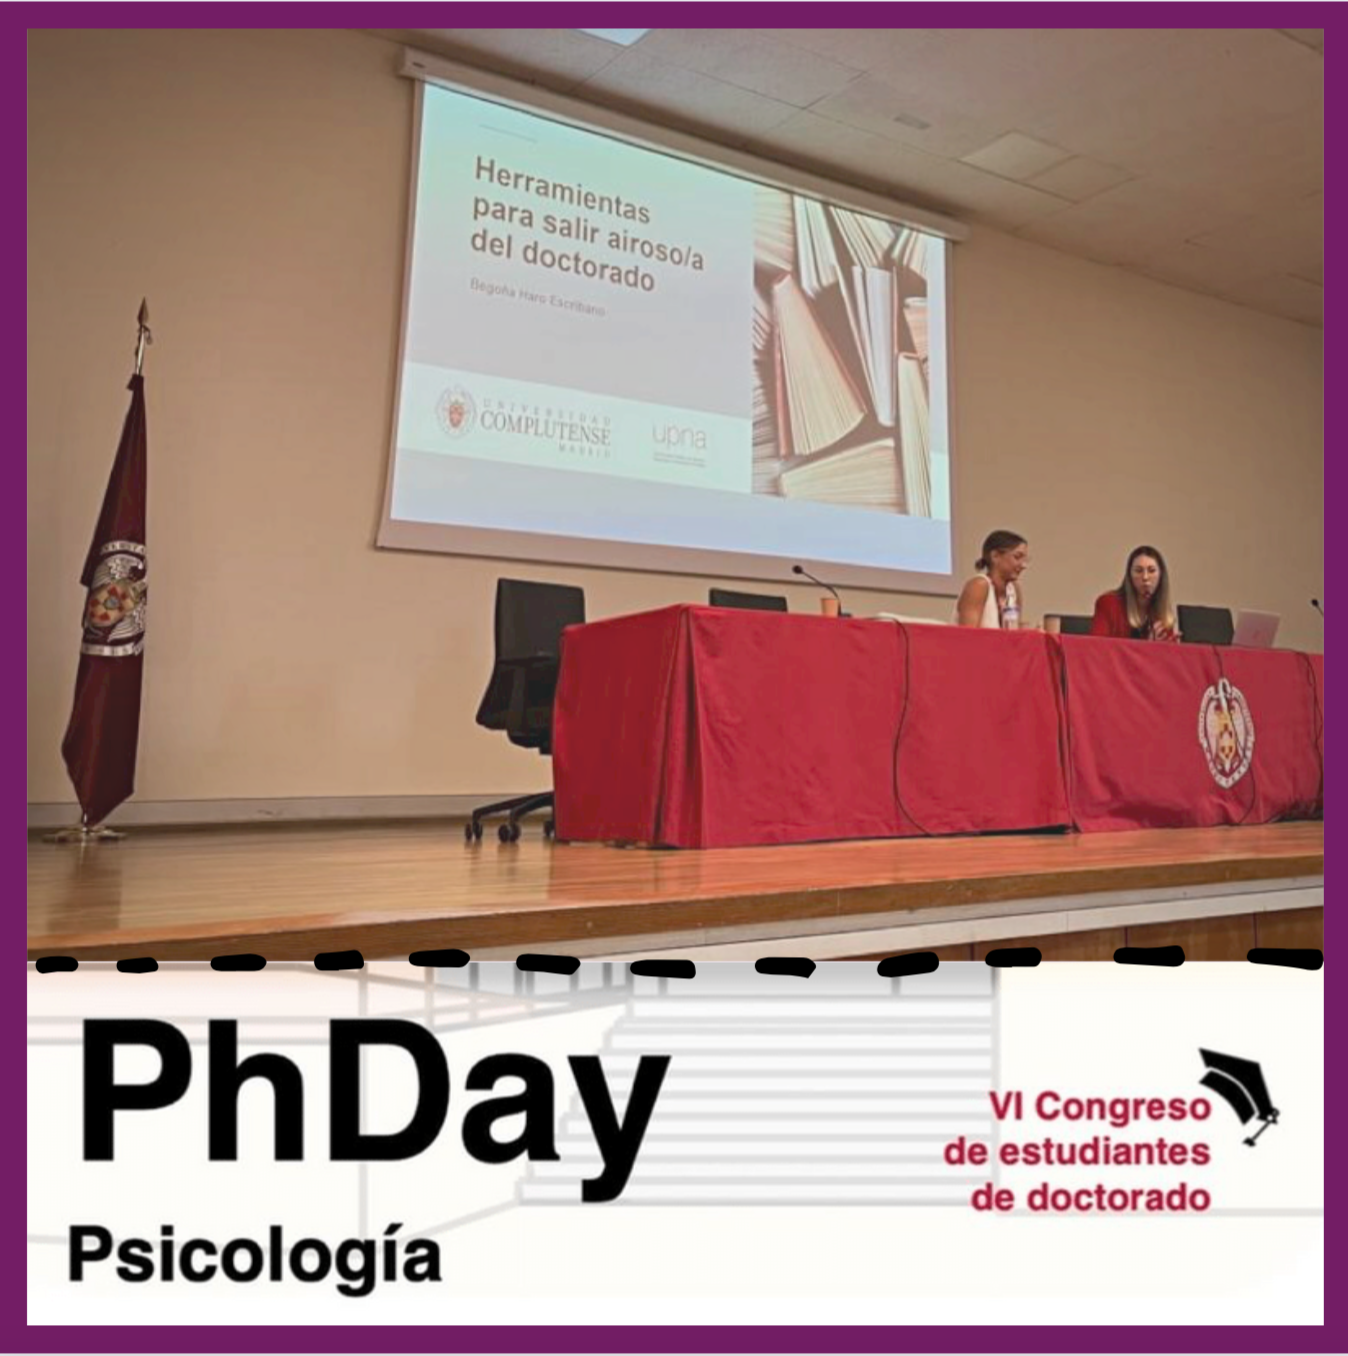 Begoña Haro Escribano presenta como ponente invitada "Herramientas para salir airoso/a del doctorado" en el PhDay Psicología 2022.